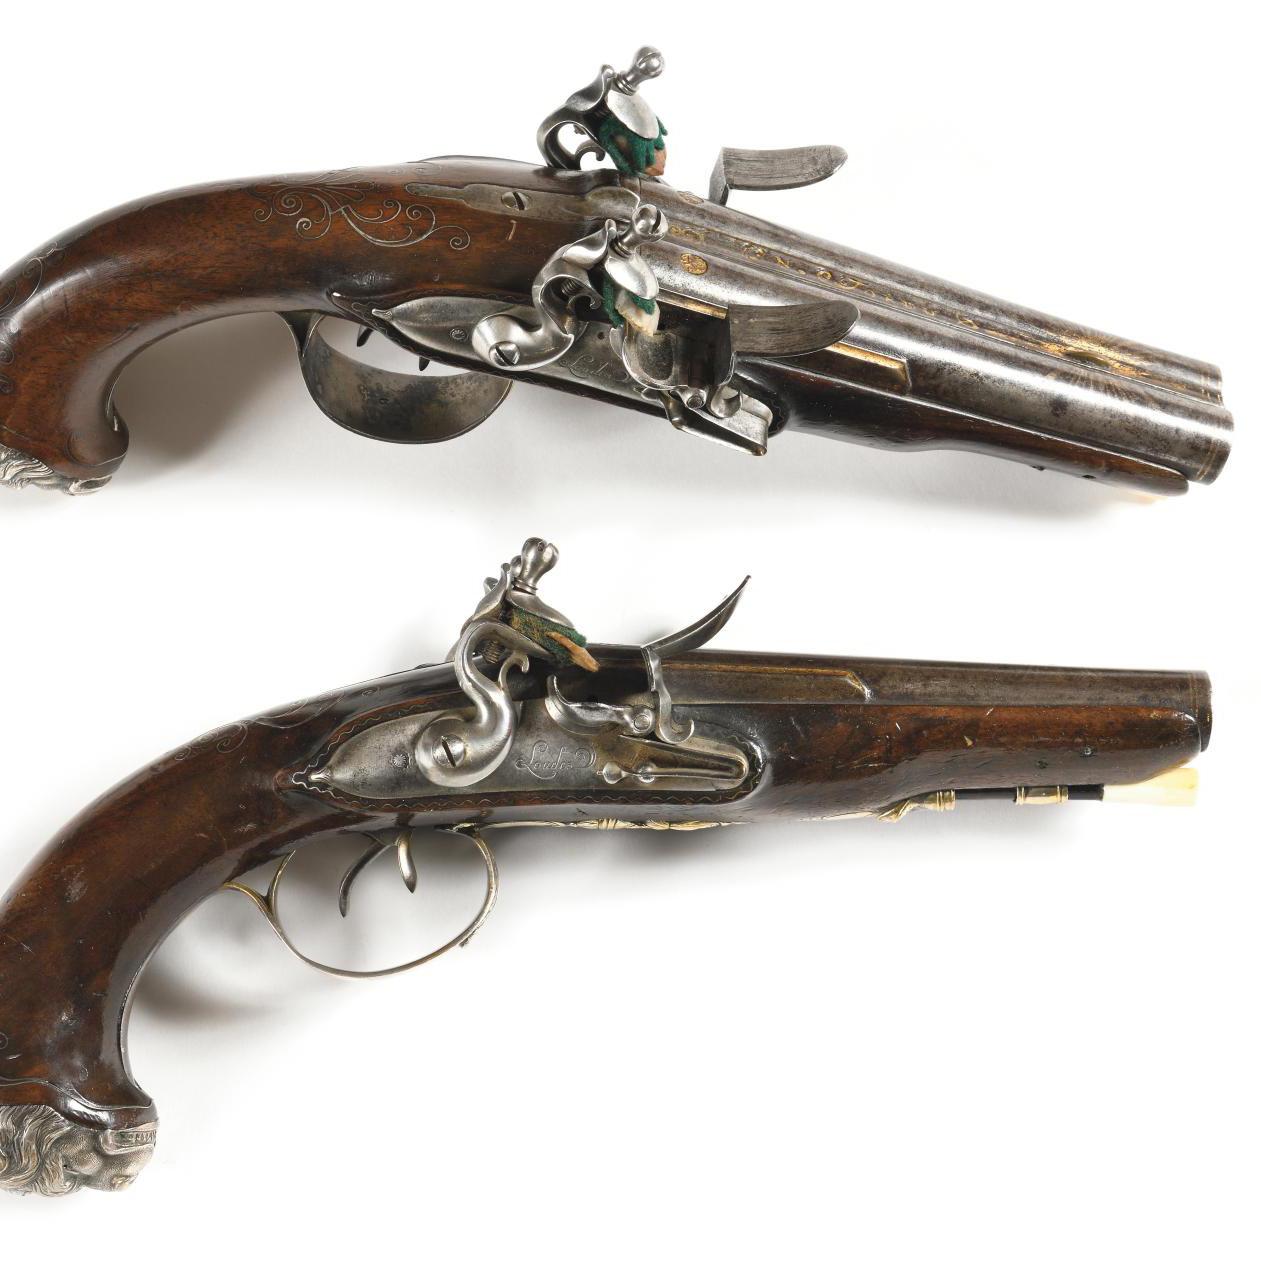 Militaria Auction: 18th-Century Pistols for the Connoisseur - Pre-sale